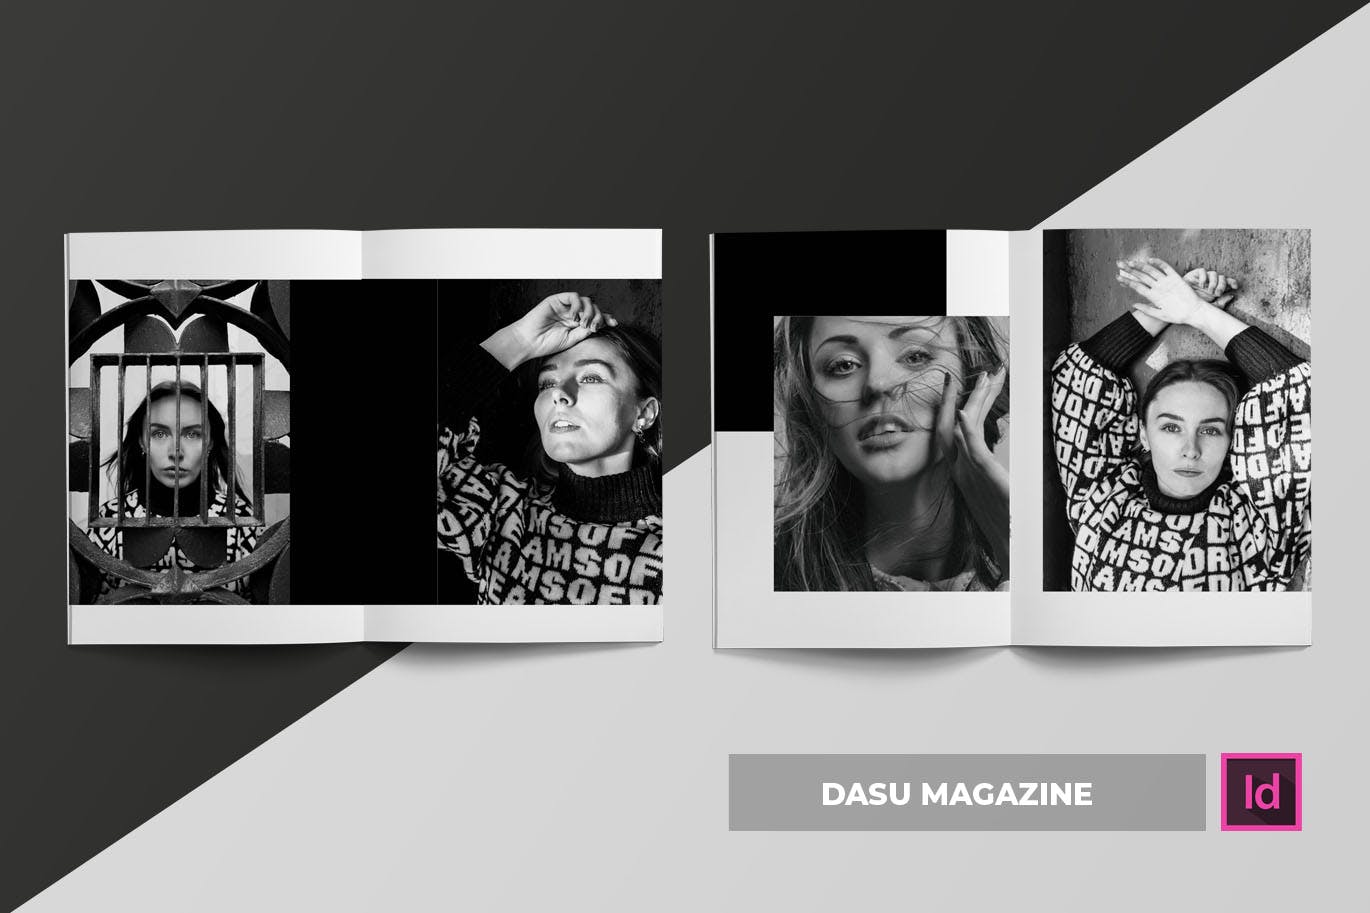 摄影艺术/时装设计主题蚂蚁素材精选杂志排版设计模板 Dasu | Magazine Template插图(3)